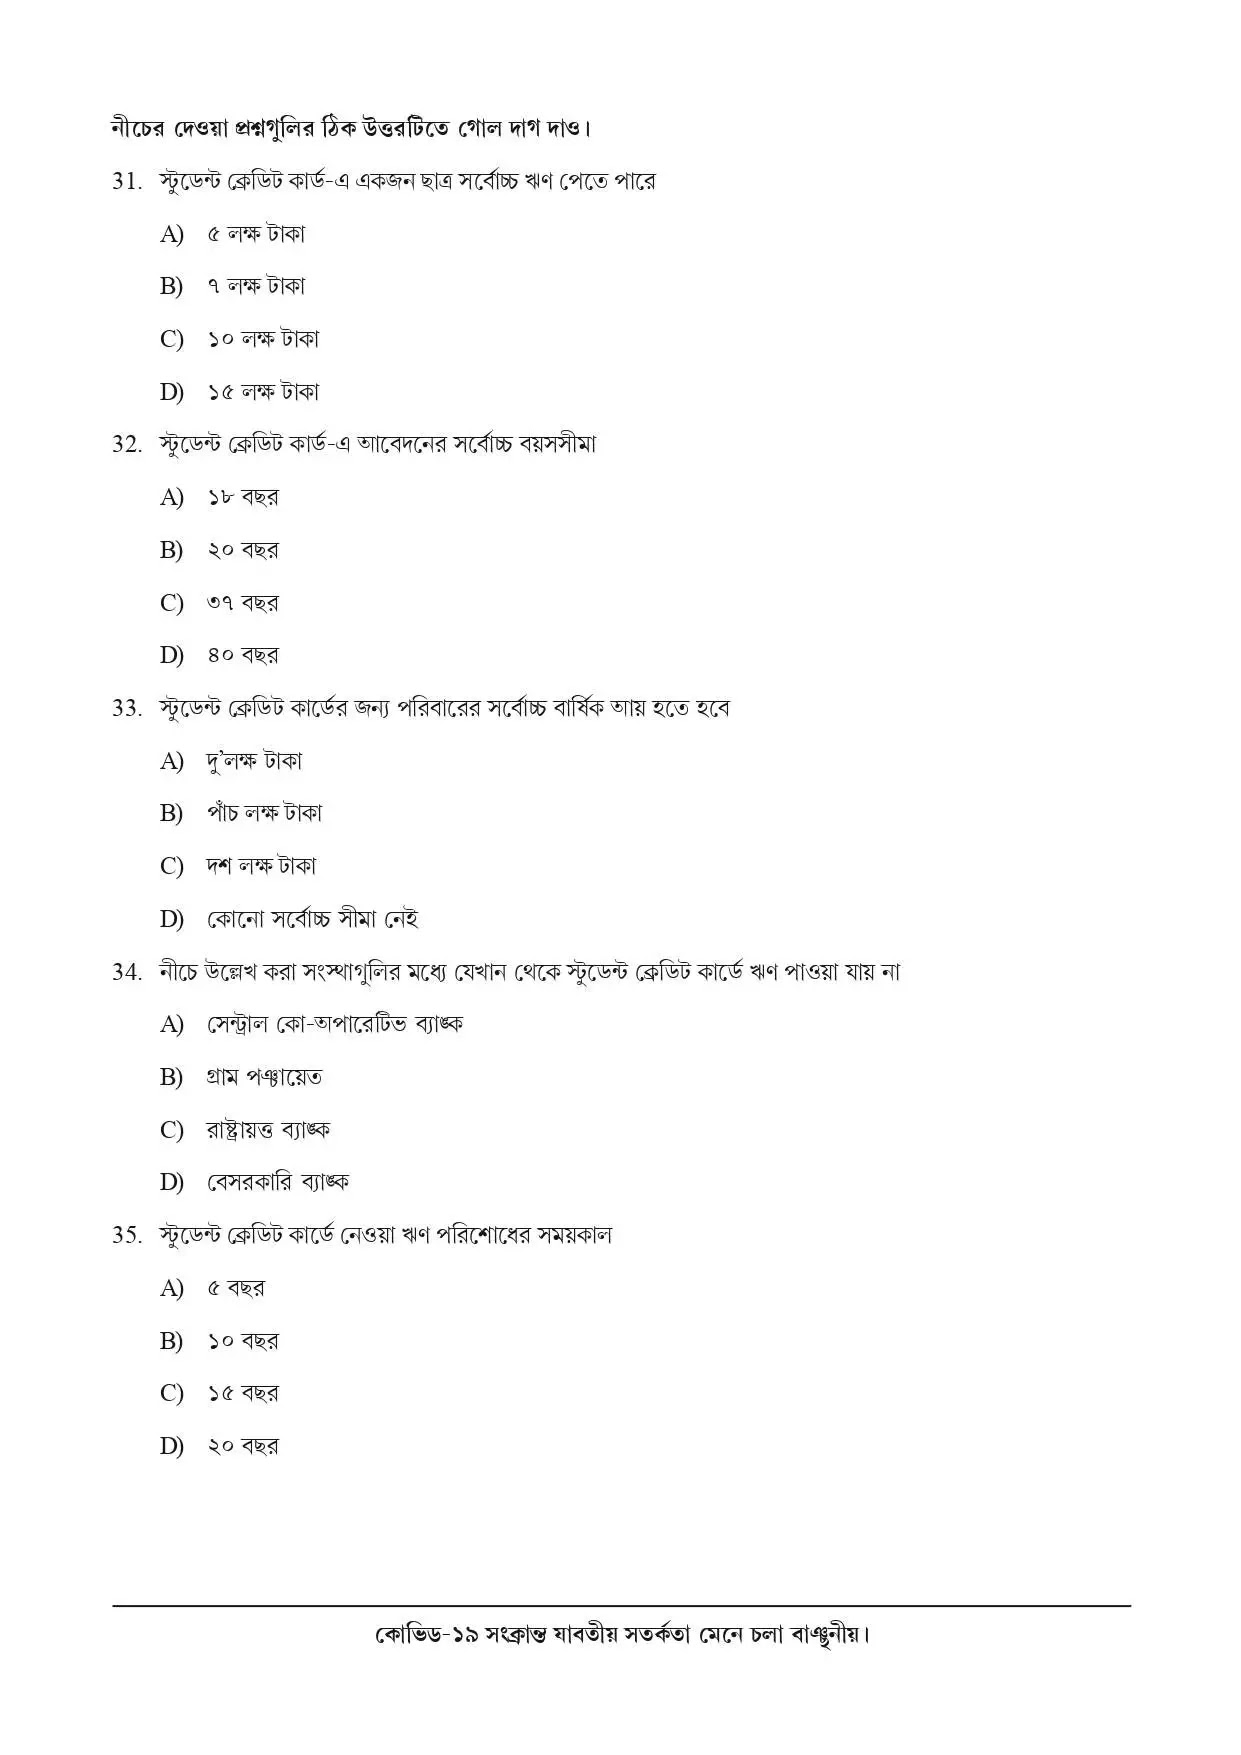 National Achievement Survey (NAS) | Class 10 | Bengali (বাংলা) | 2021 | Question & Answer